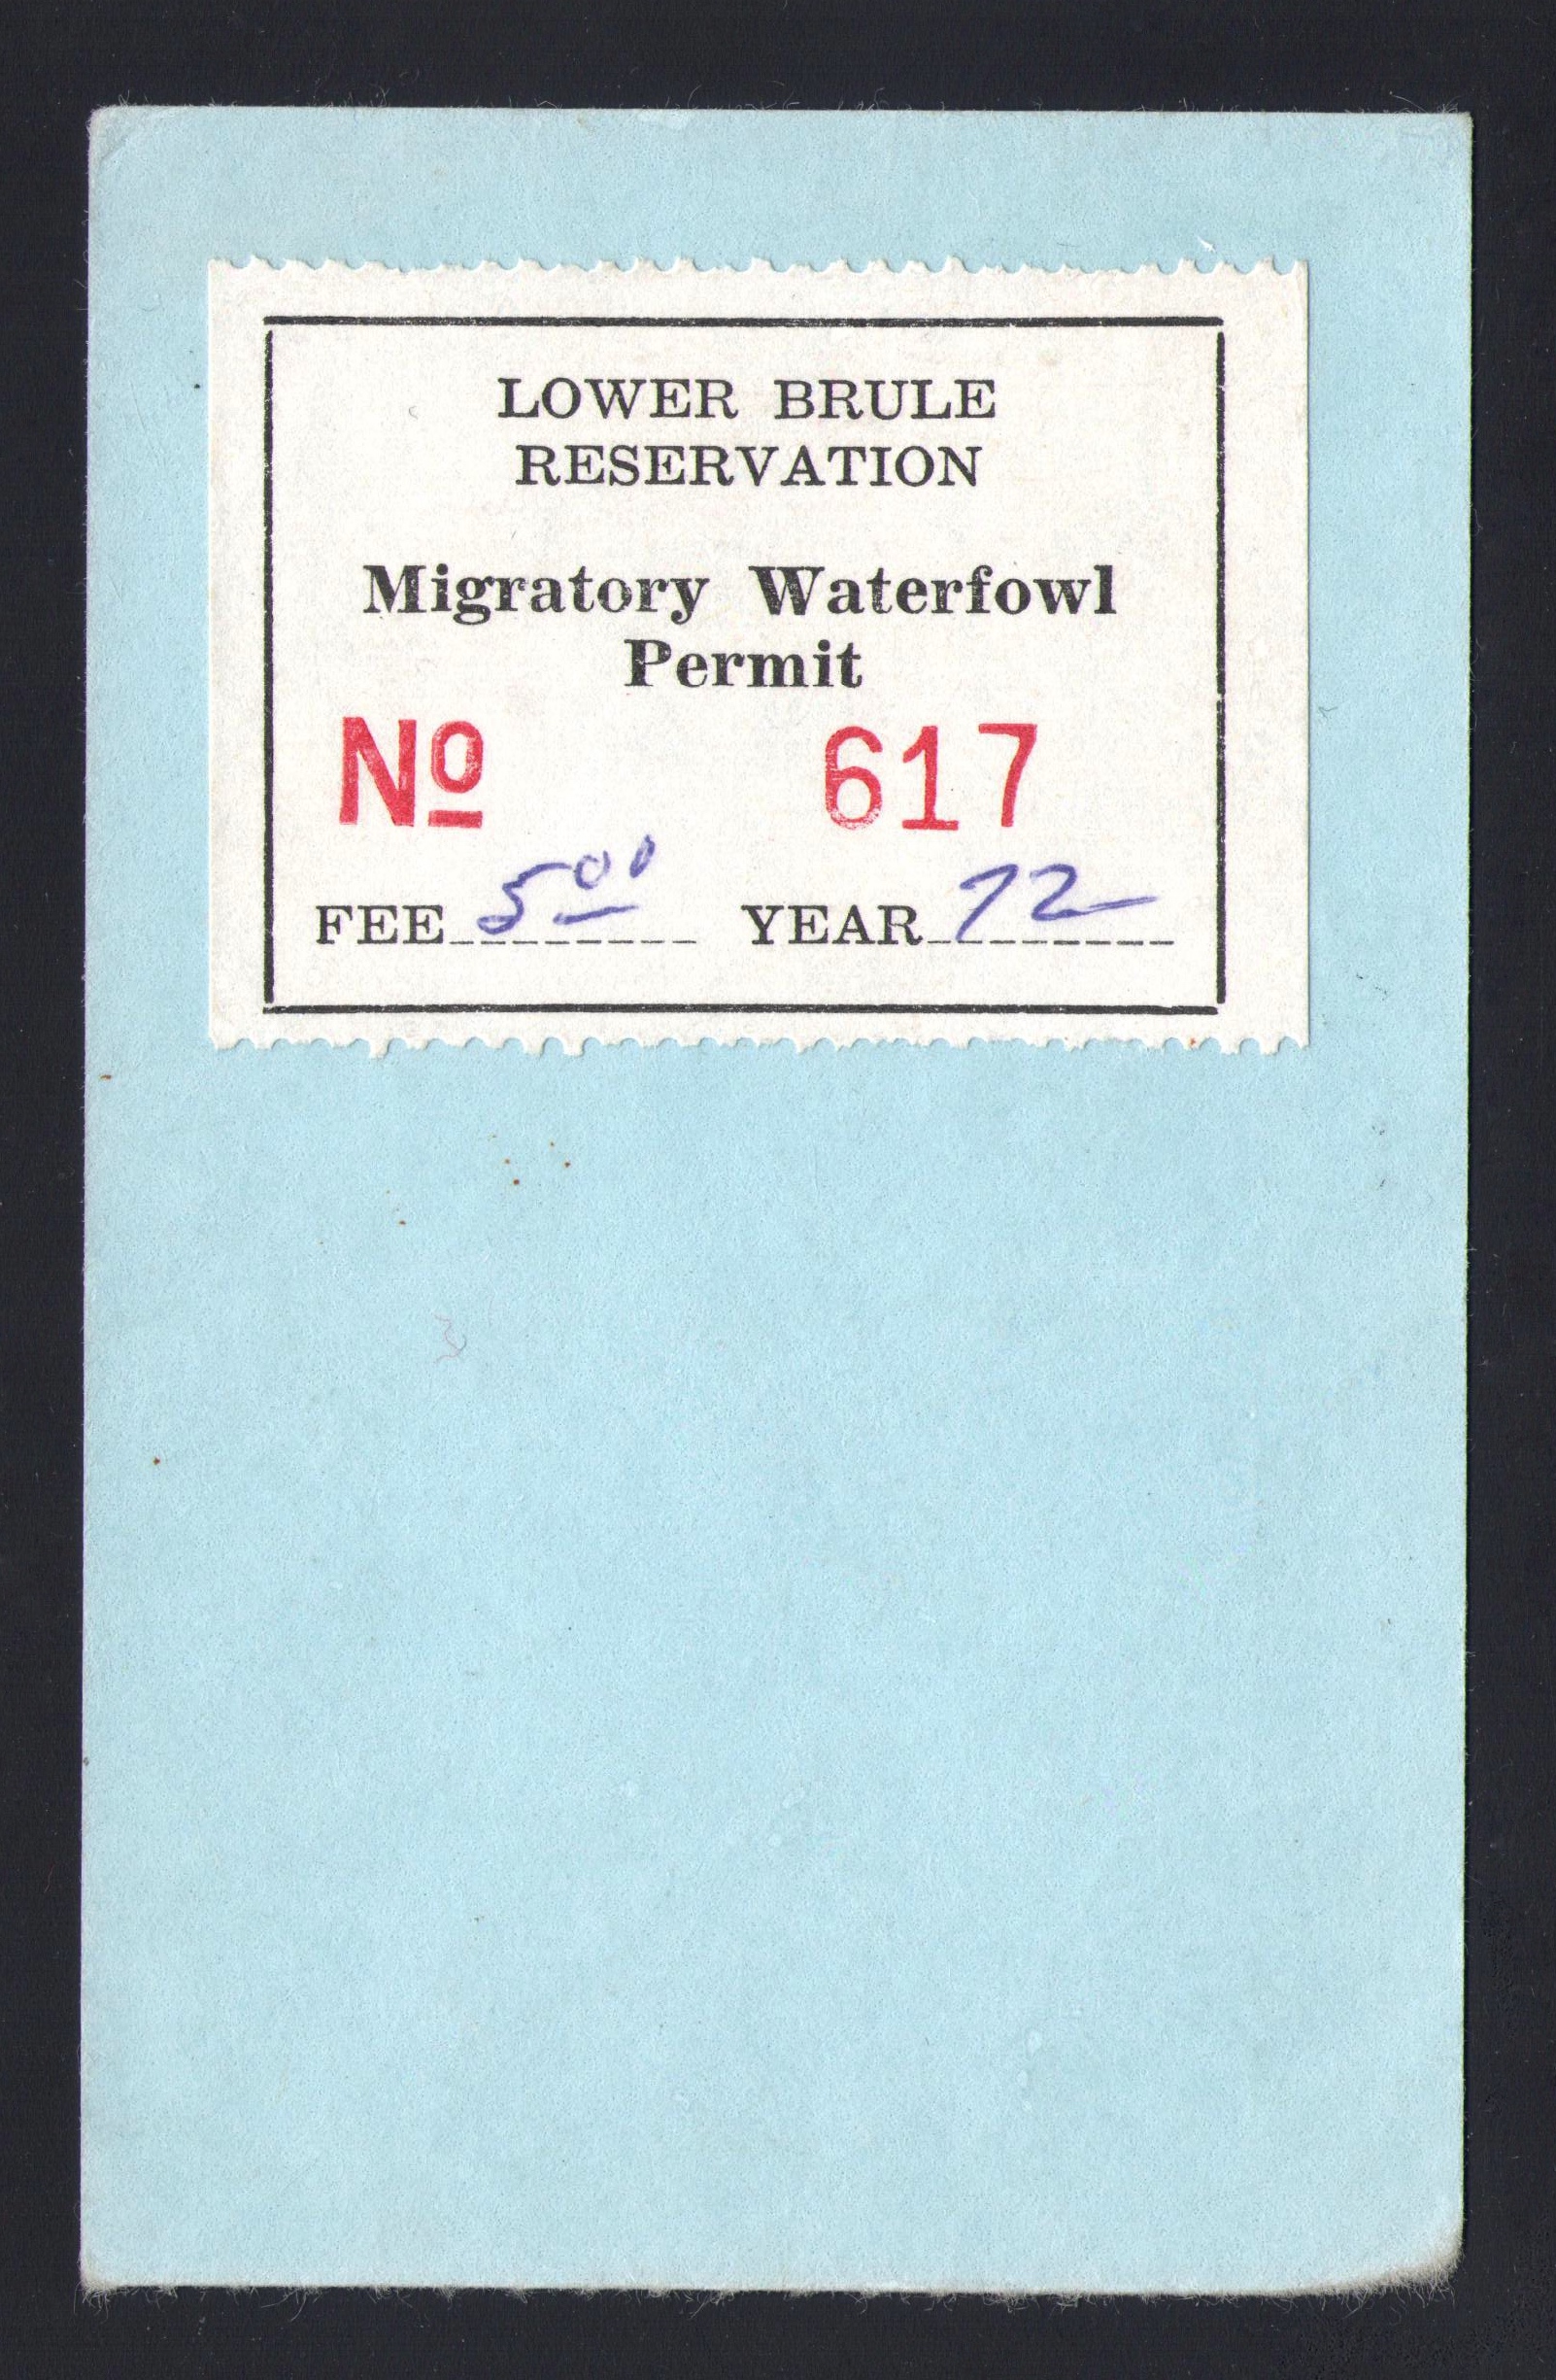 1972 Lower Brule Waterfowl Type II on License